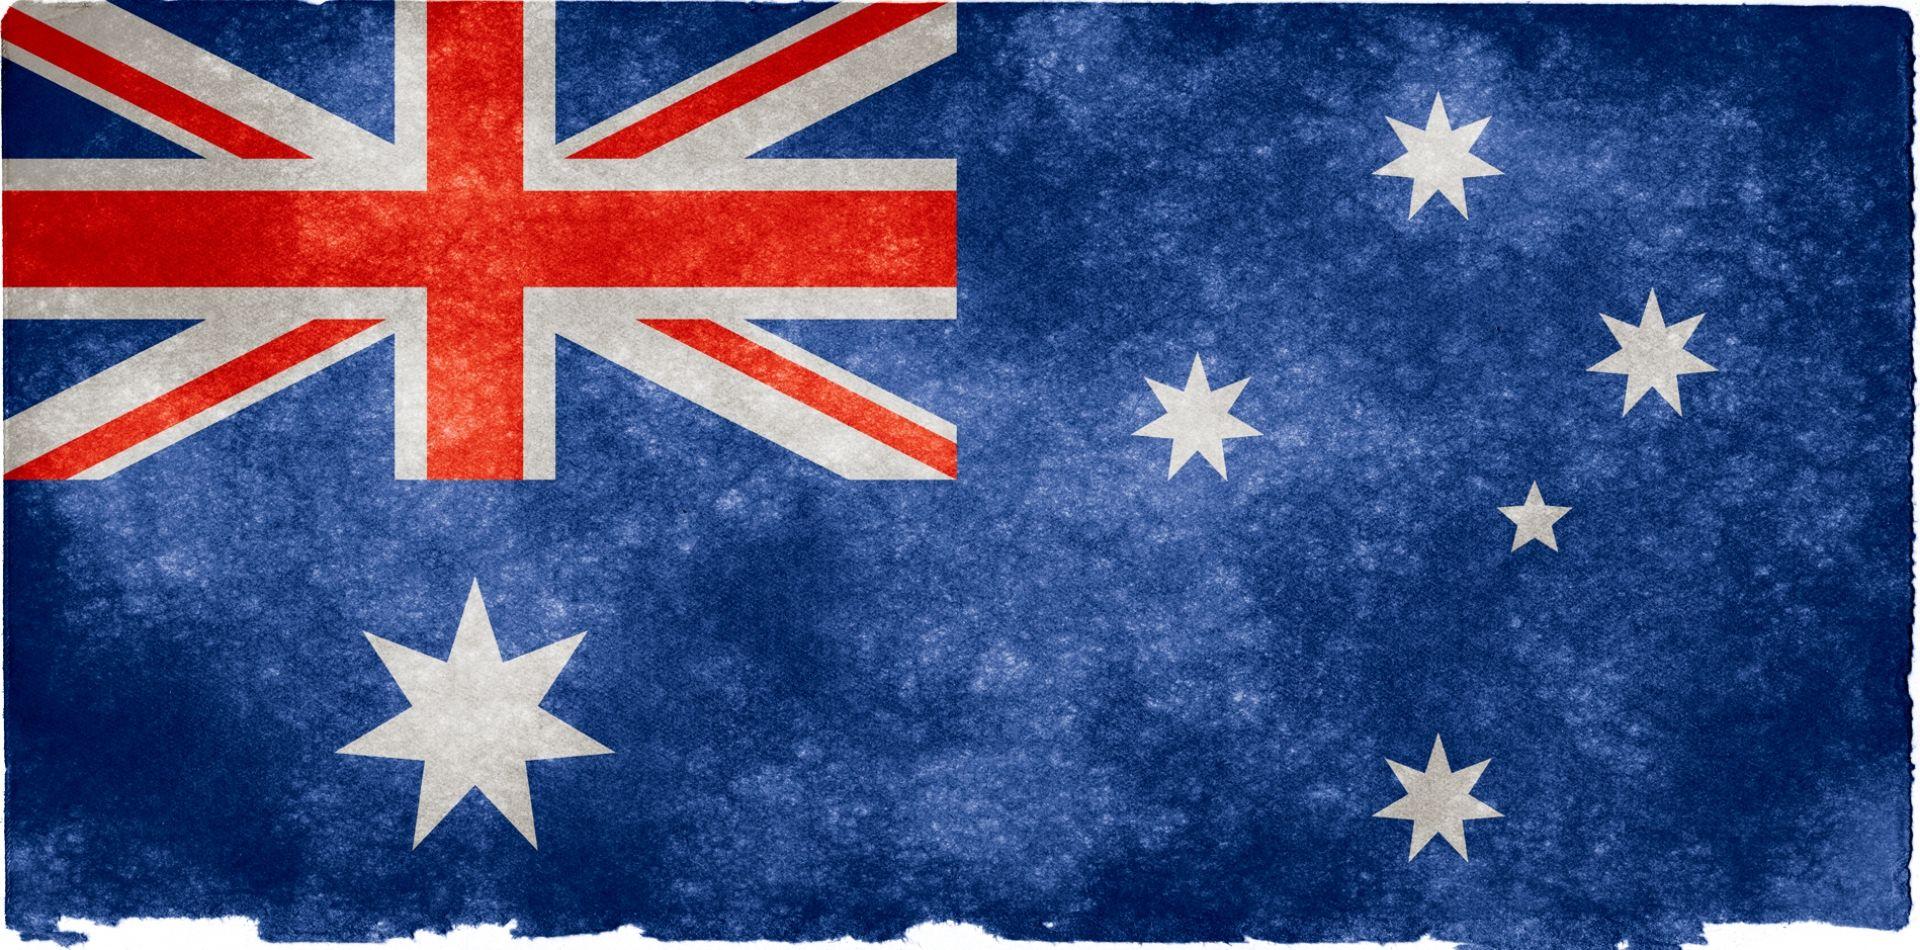 Australia Flag Wallpaper Background. Art. Wallpaper